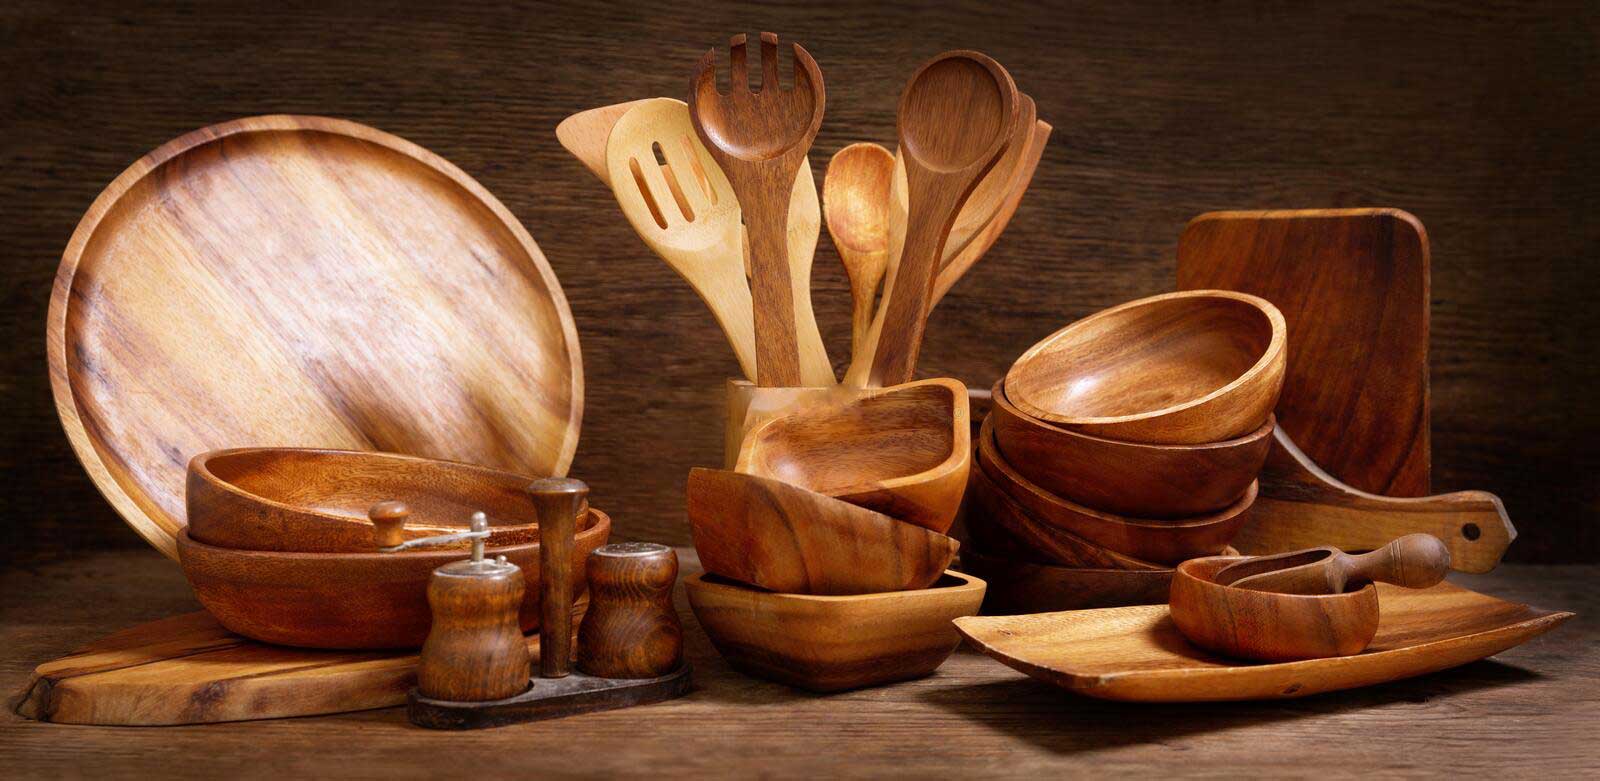 Kitchen Wooden Dishesh 